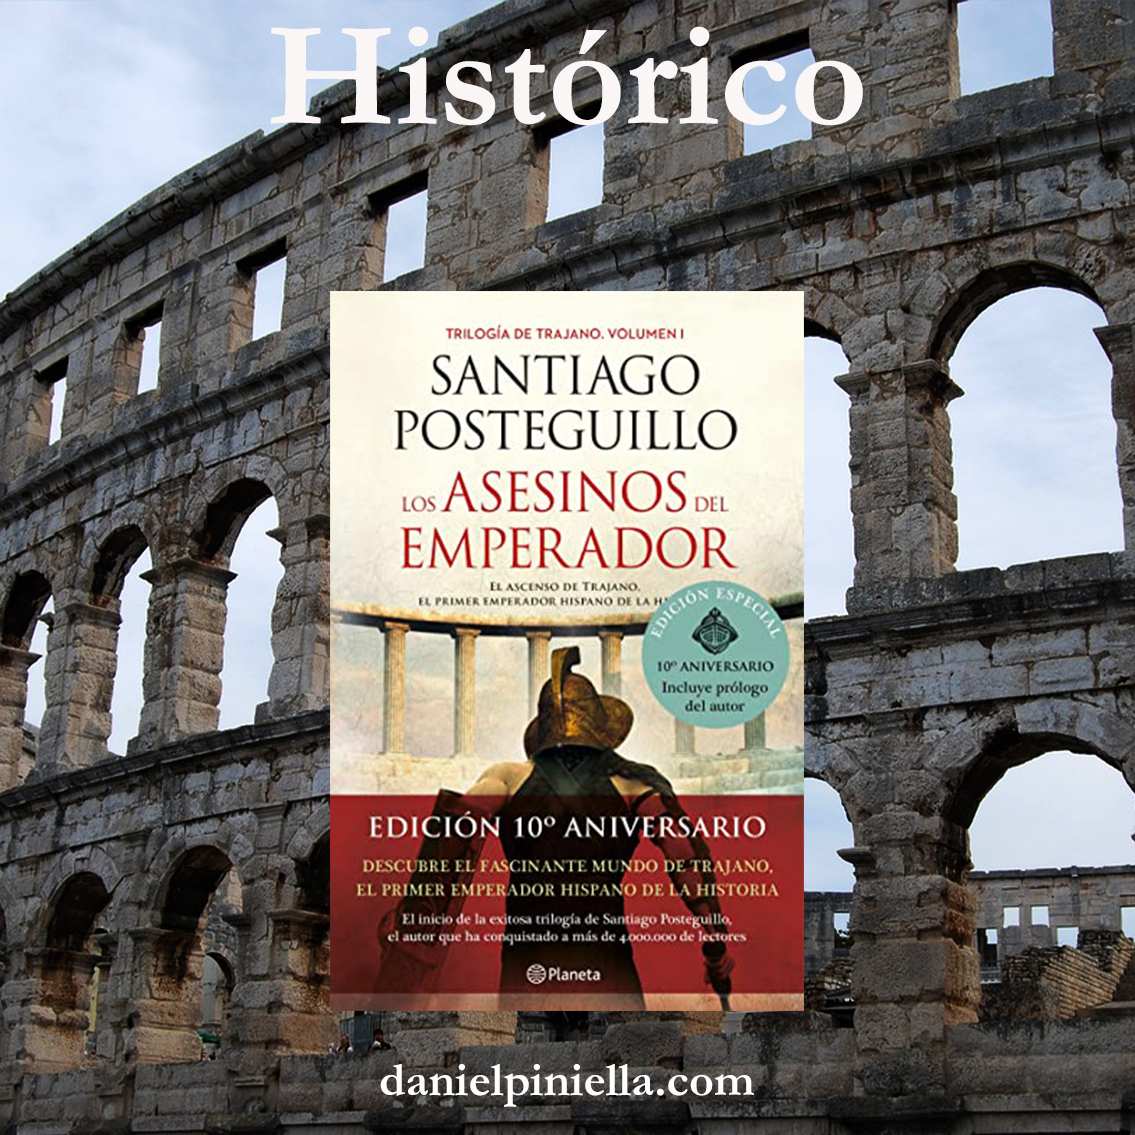 Reseñas de novela histórica: Los asesinos del emperador de Santiago Posteguillo